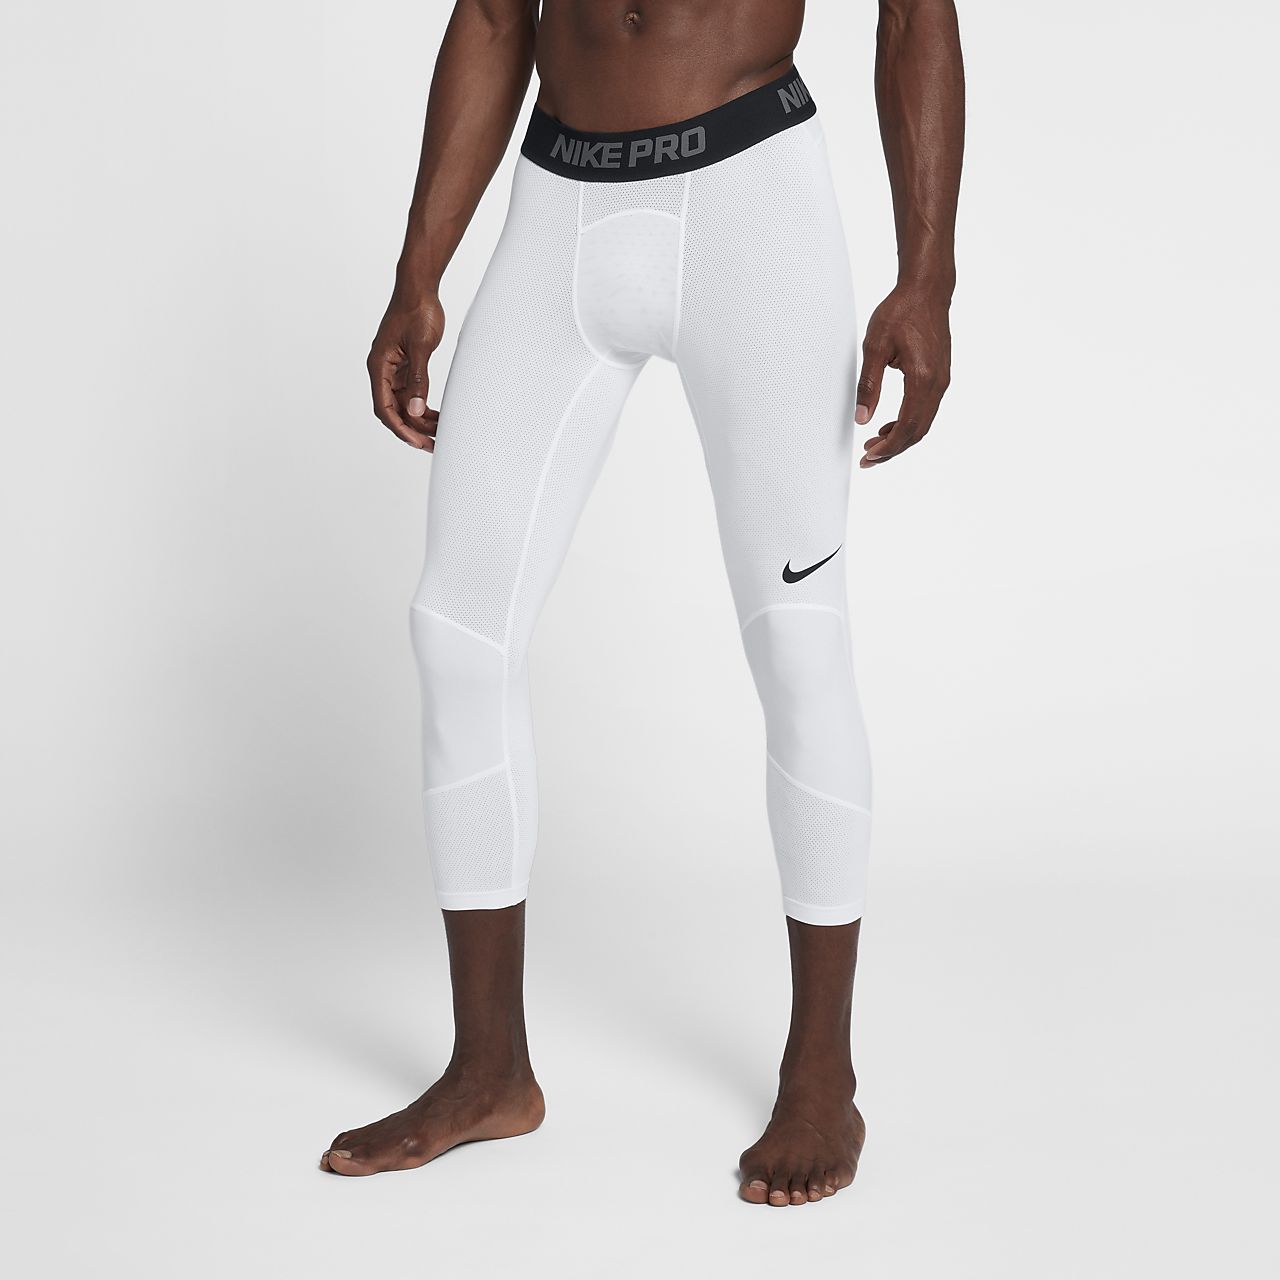 Nike Mens Pro Cool Dri Fit 3 4 Compression Leggings - FitnessRetro